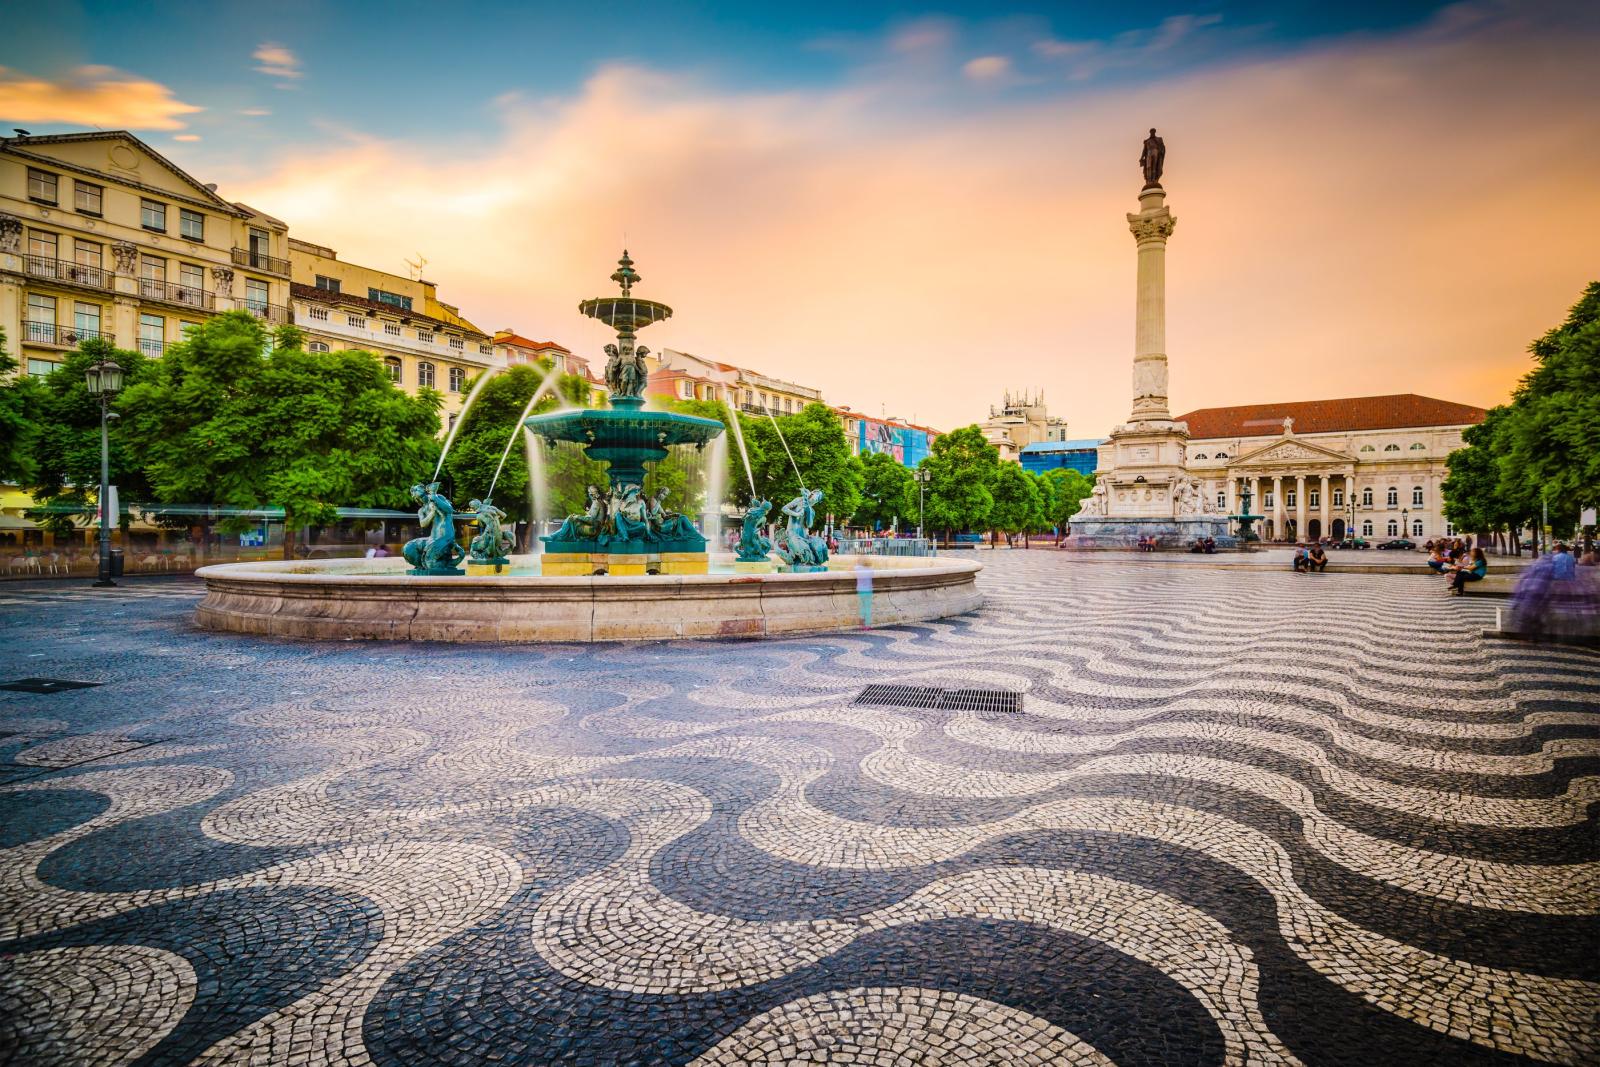 Rossio Square in Lisbon, Portugal